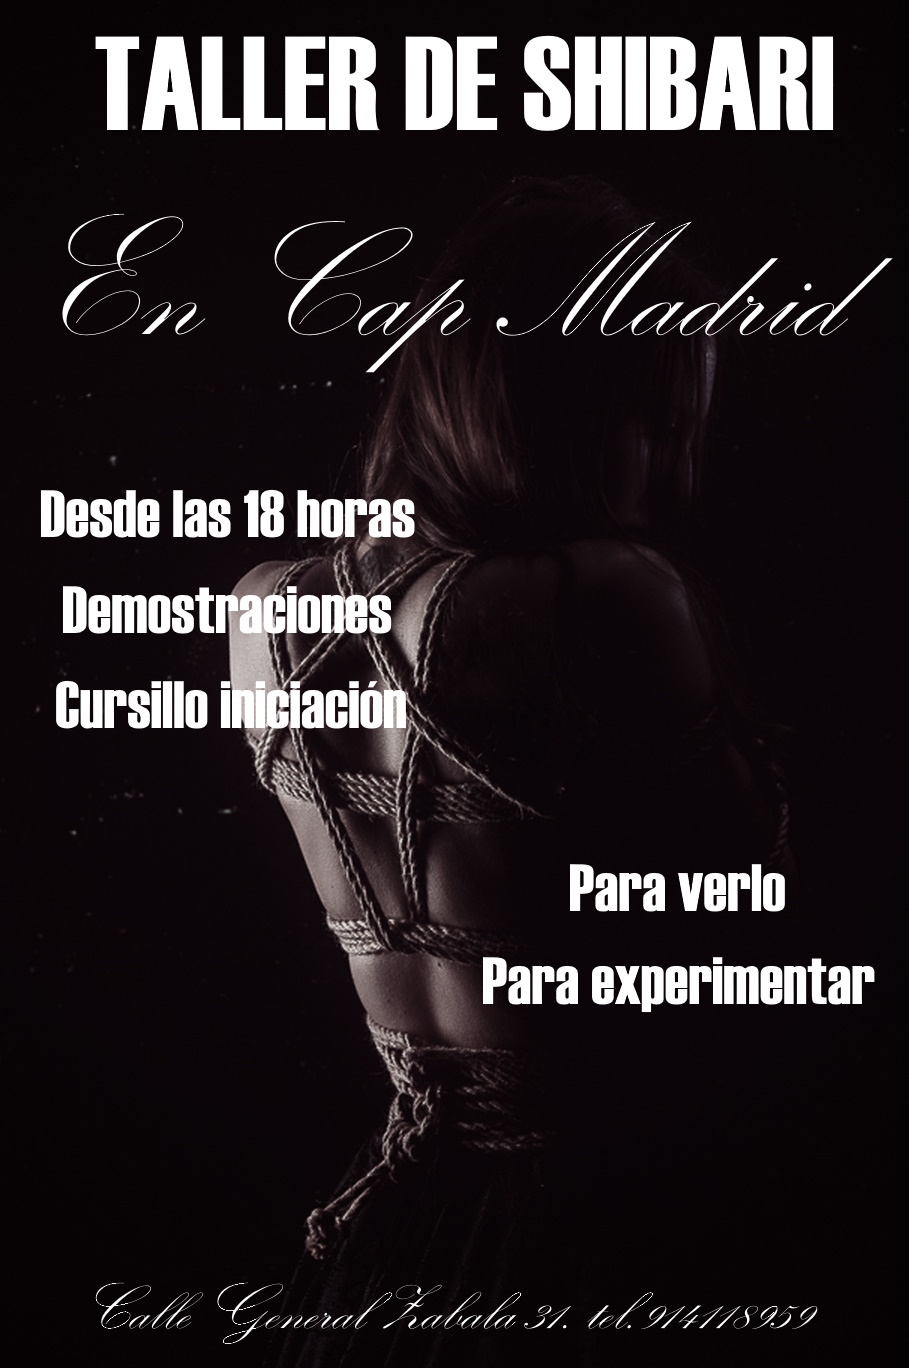 ¡¡¡¡TALLER DE SHIBARI EN CAP MADRID. VEN Y ENTRA EN EL MUNDO DEL BDSM!!!!